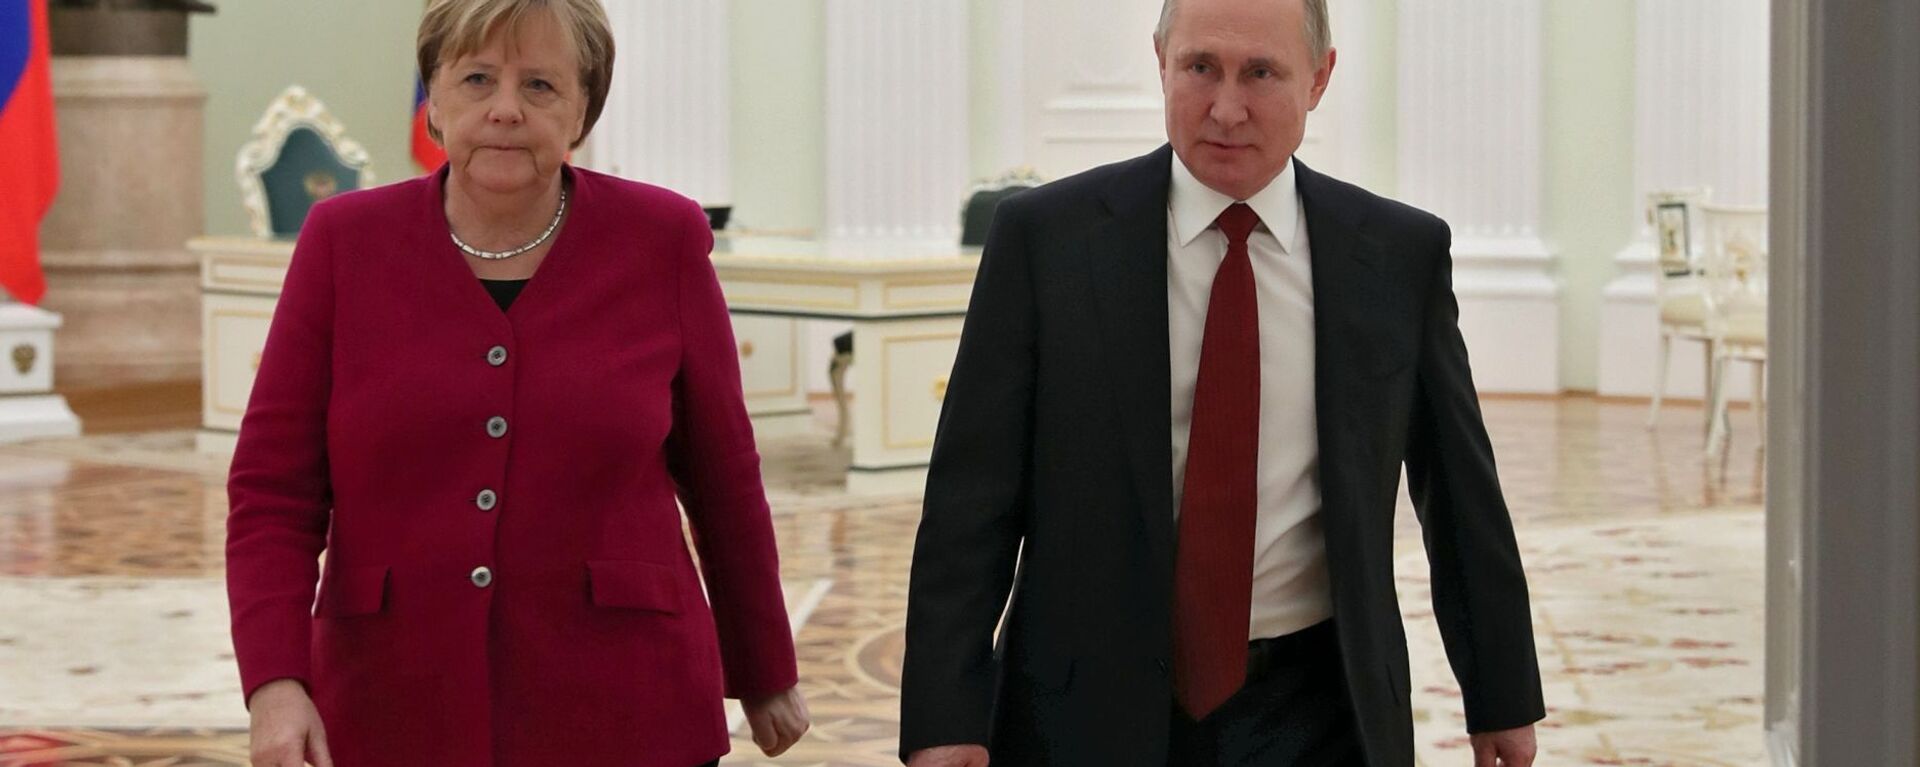 Ruski predsednik Vladimir Putin i nemačka kancelarka Angela Merkel - Sputnik Srbija, 1920, 13.08.2021